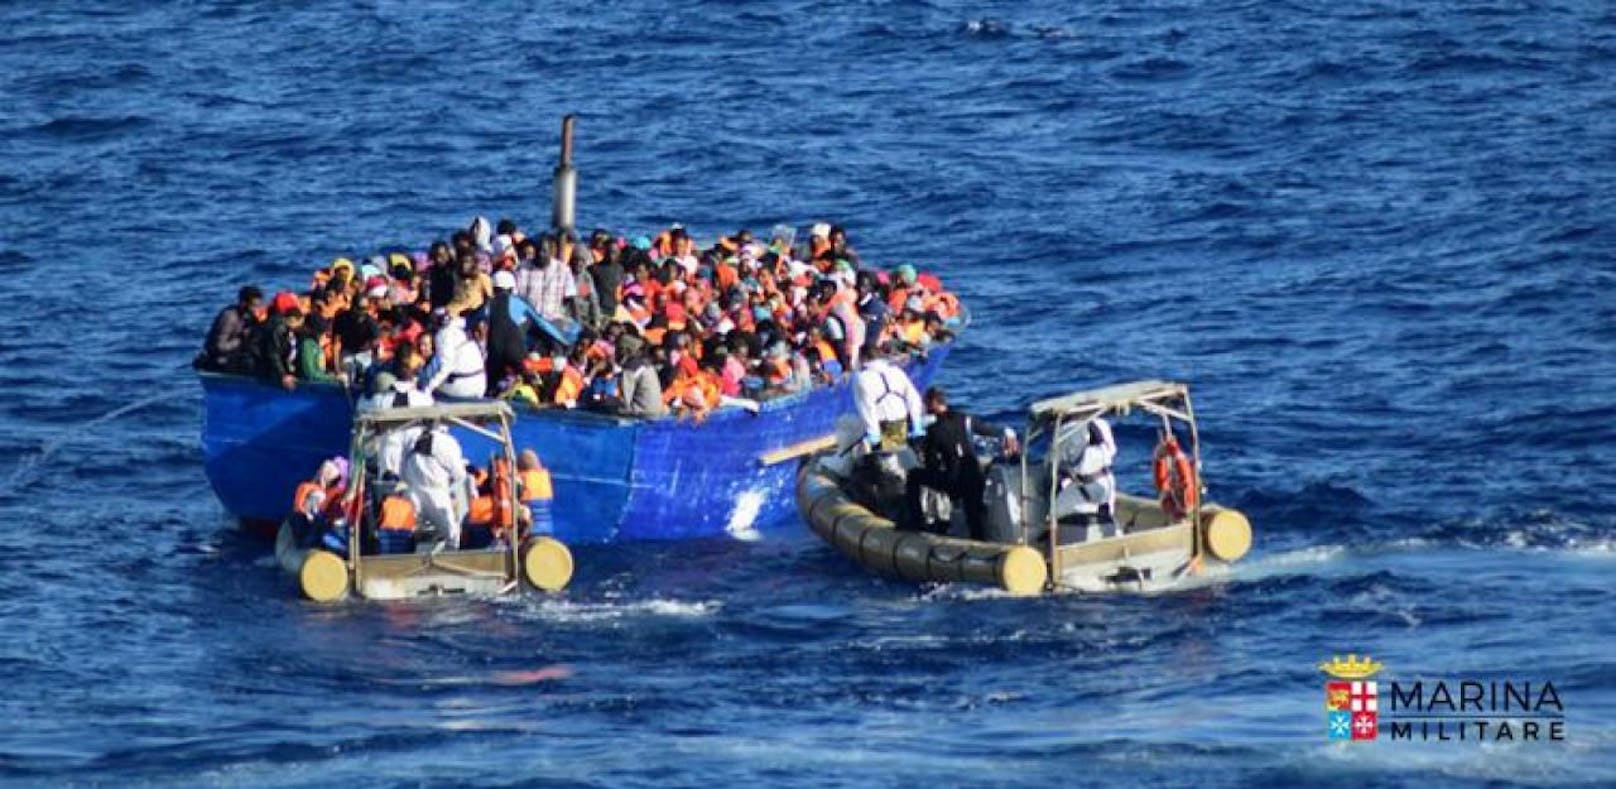 Tausende wollen über das Mittelmeer nach Europa.